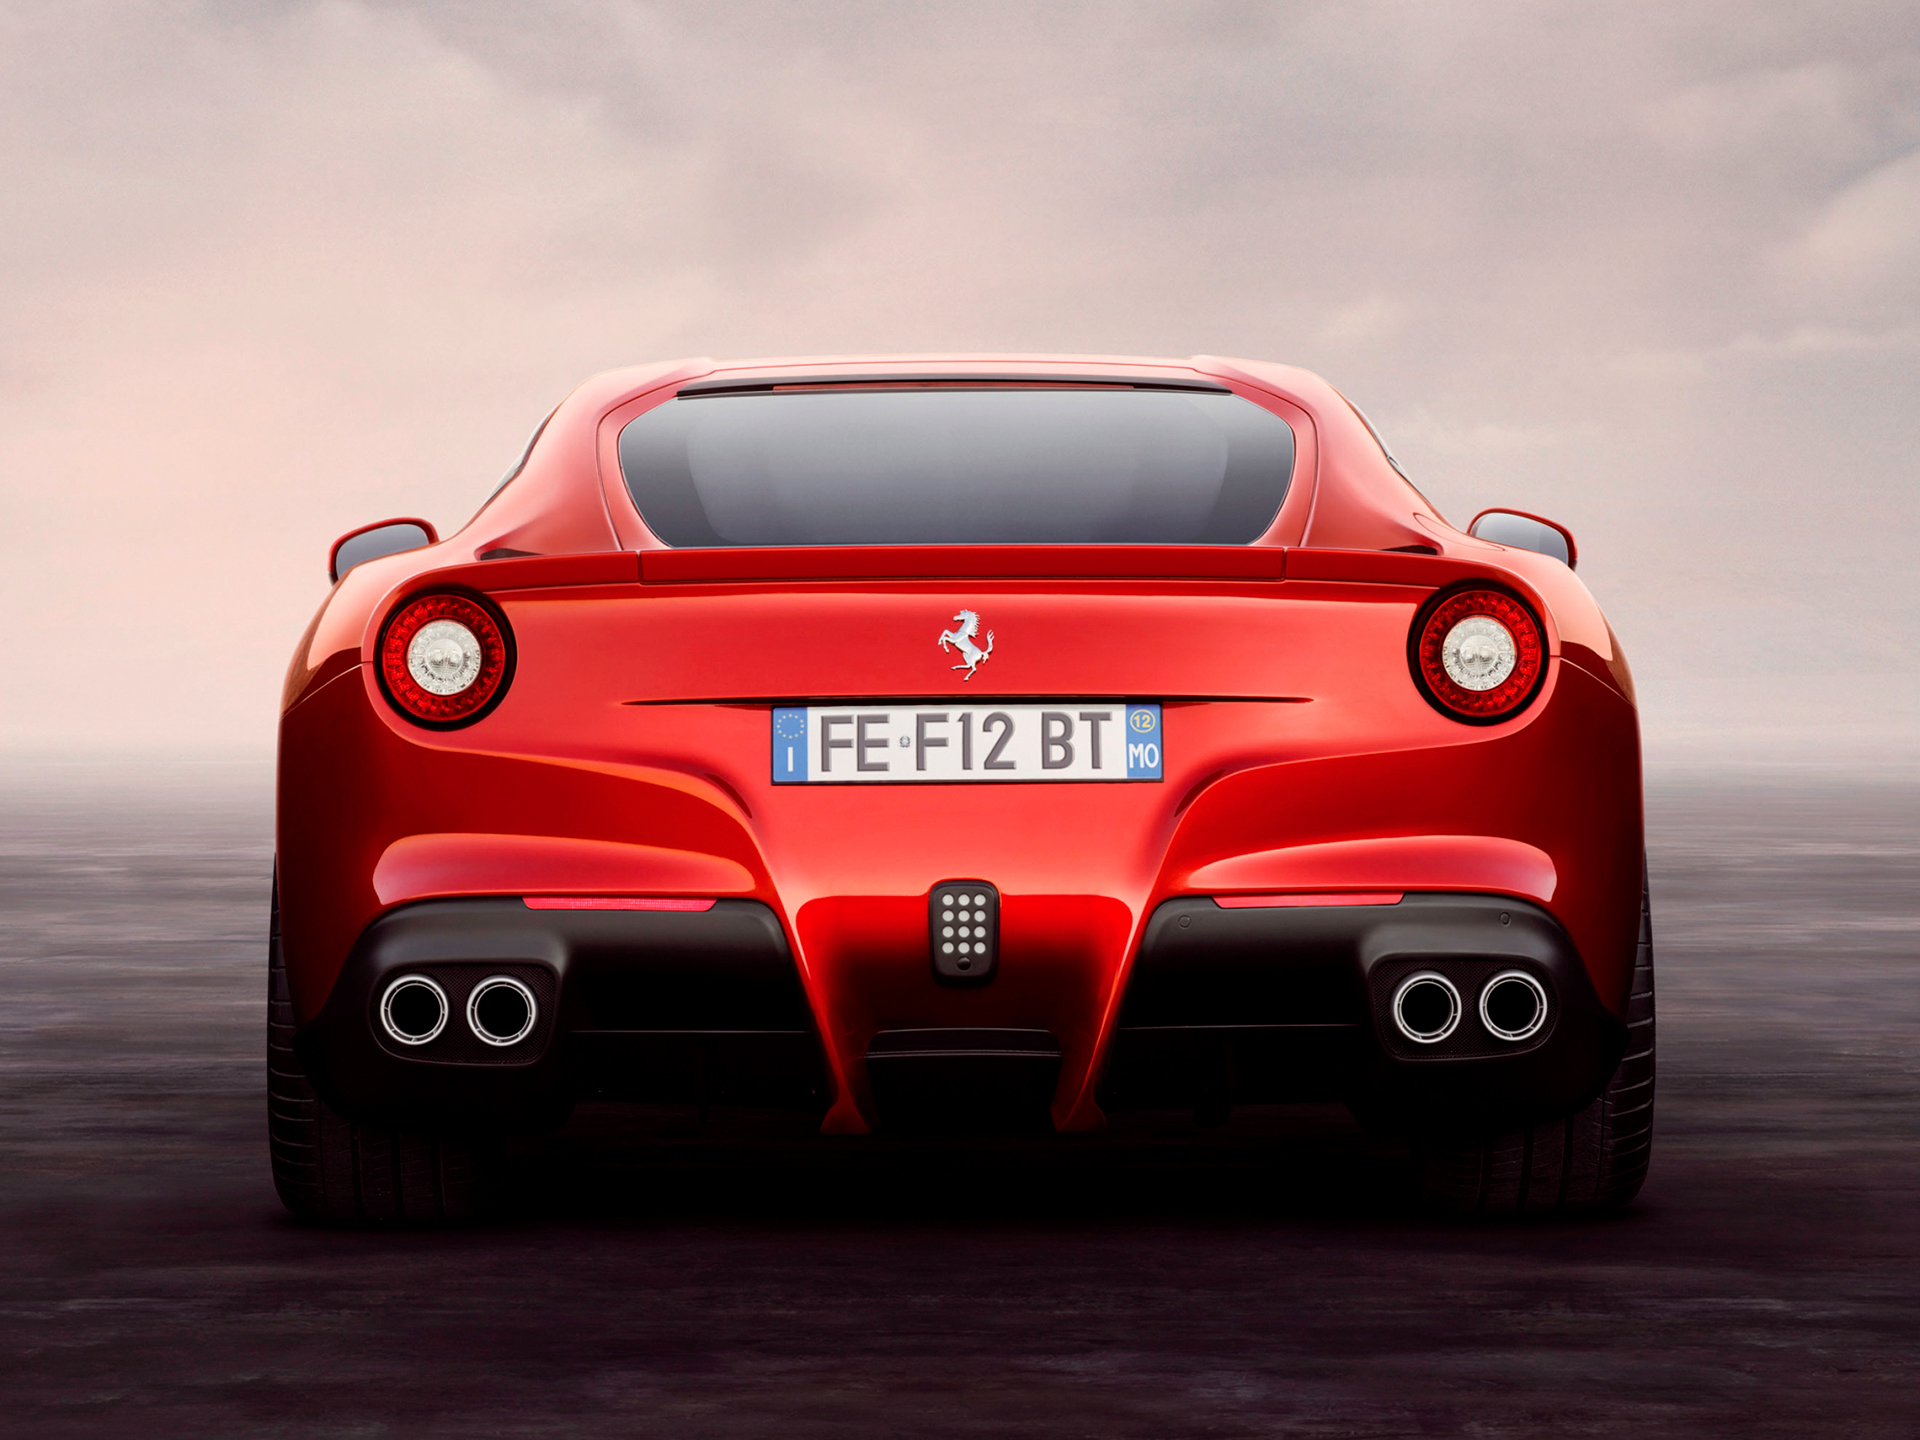 Ferrari F12berlinetta - arrière / rear